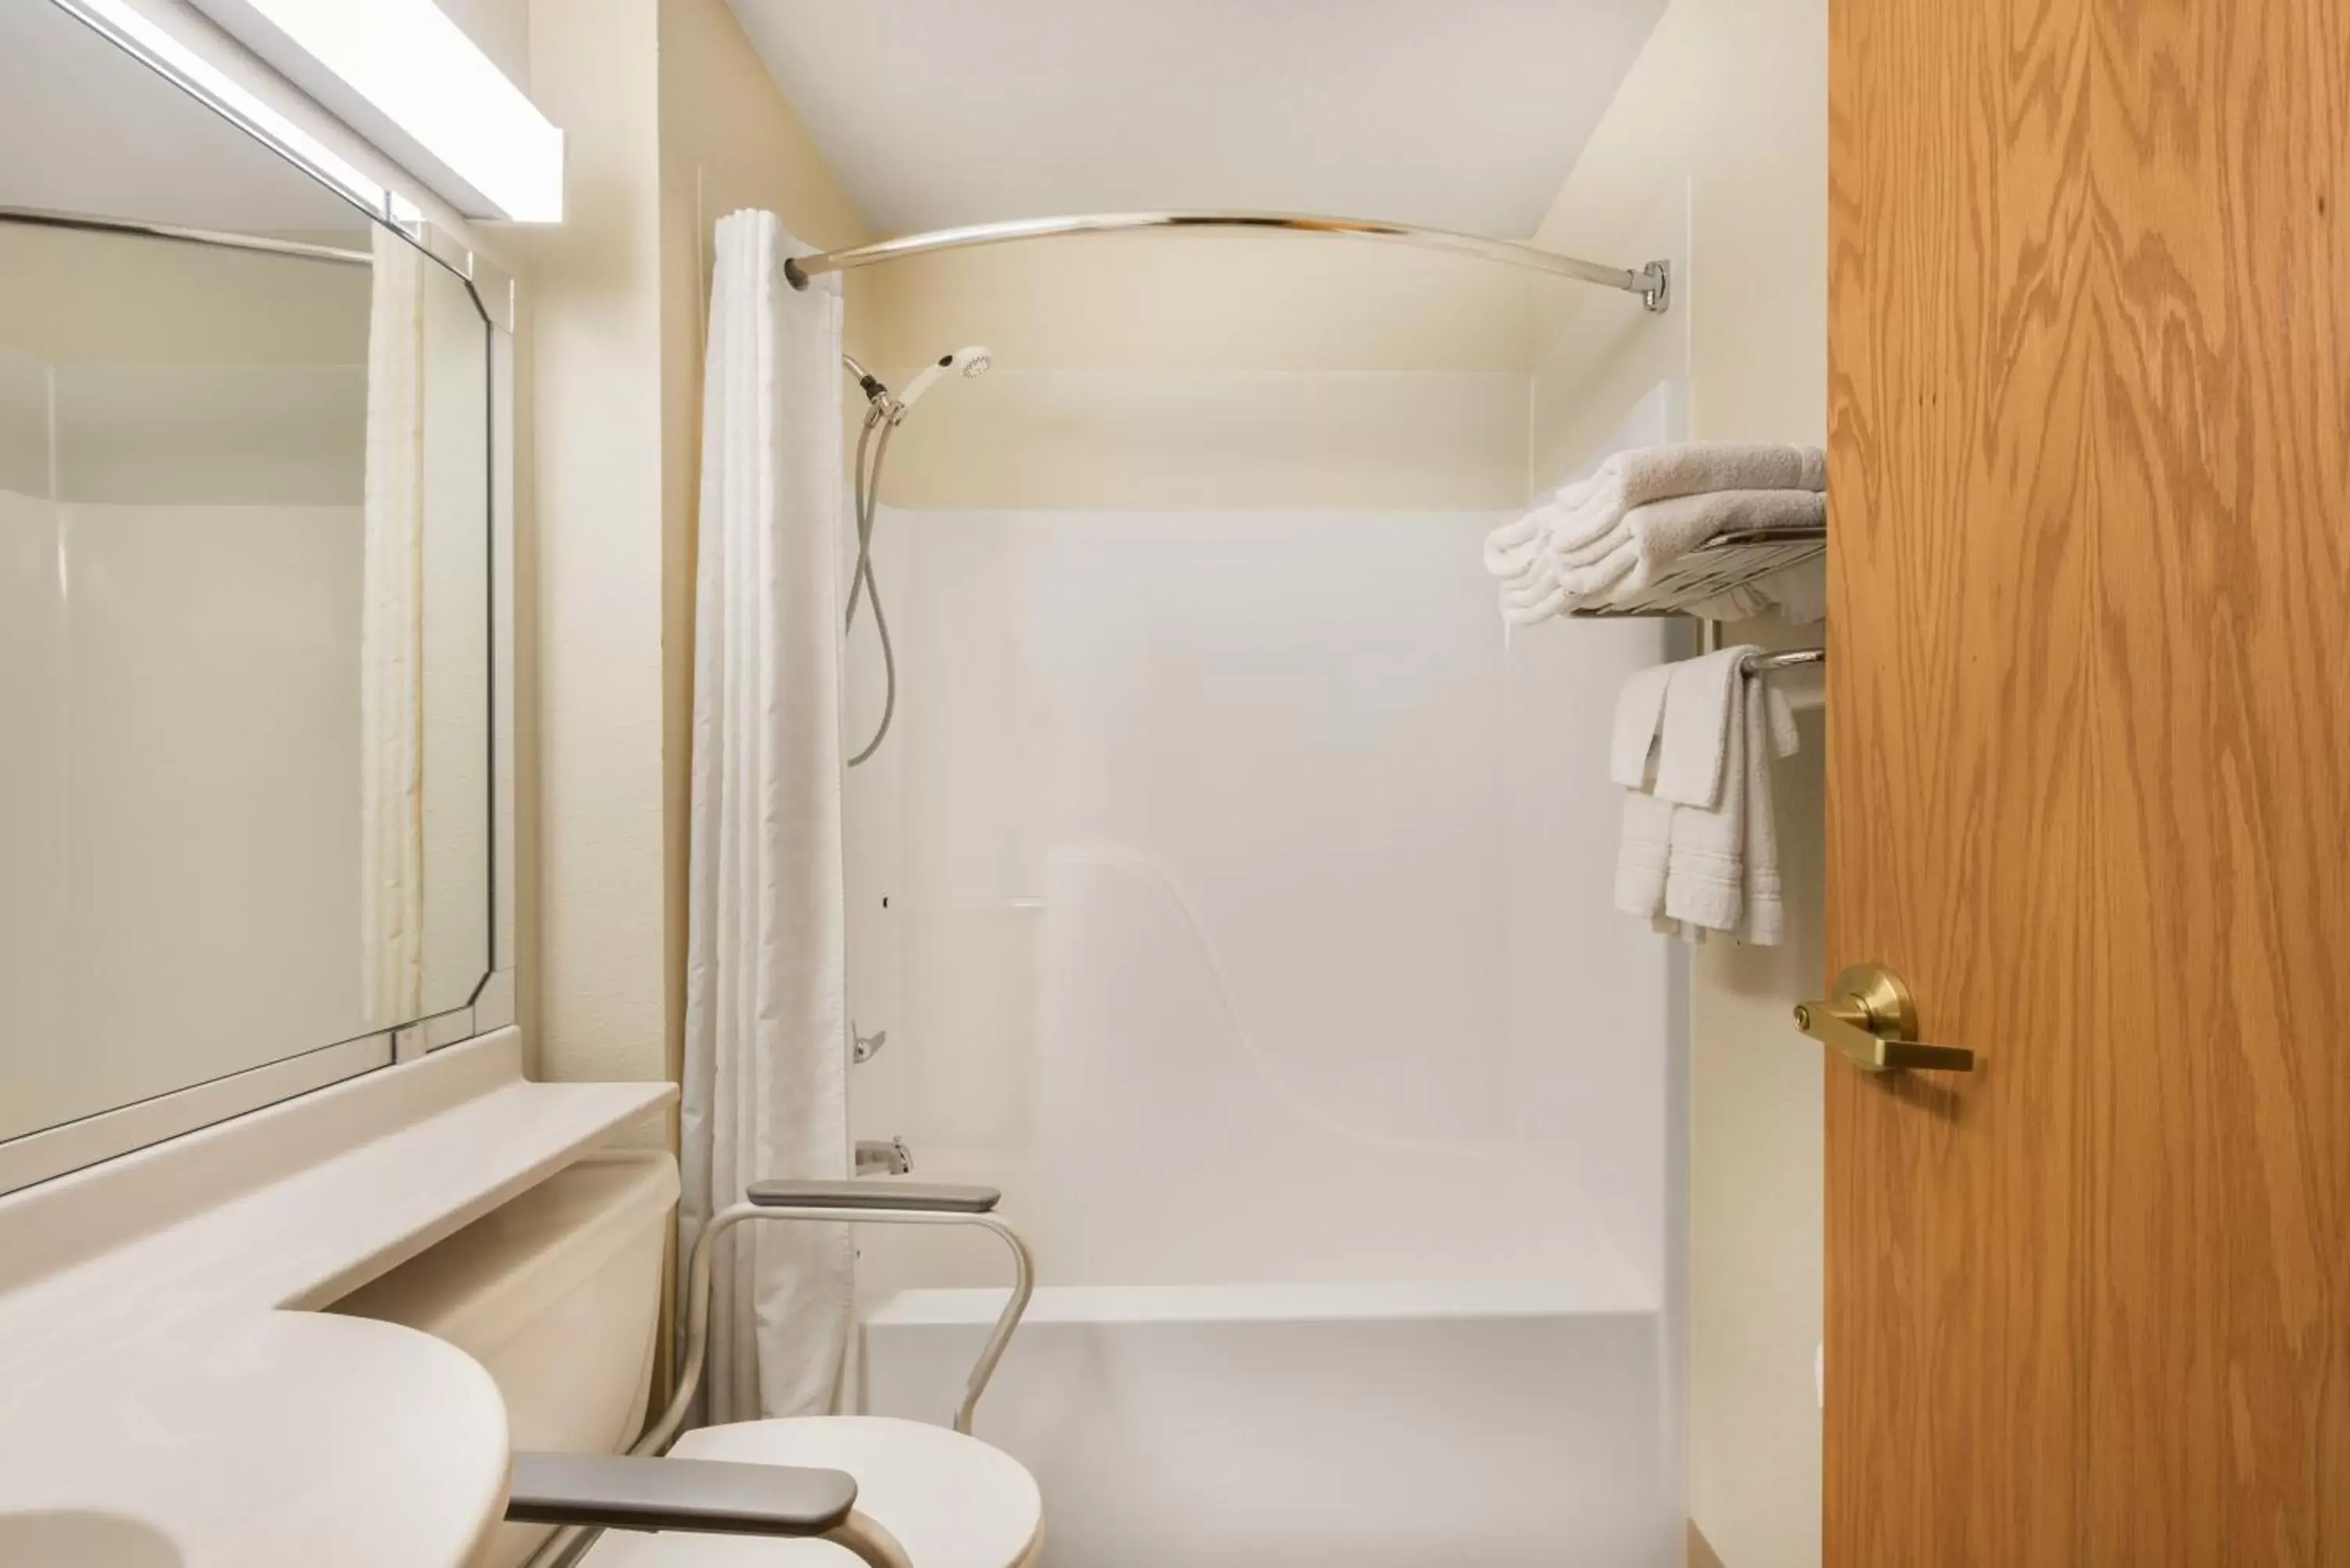 Toilet, Bathroom in Microtel Inn & Suites by Wyndham Sainte Genevieve